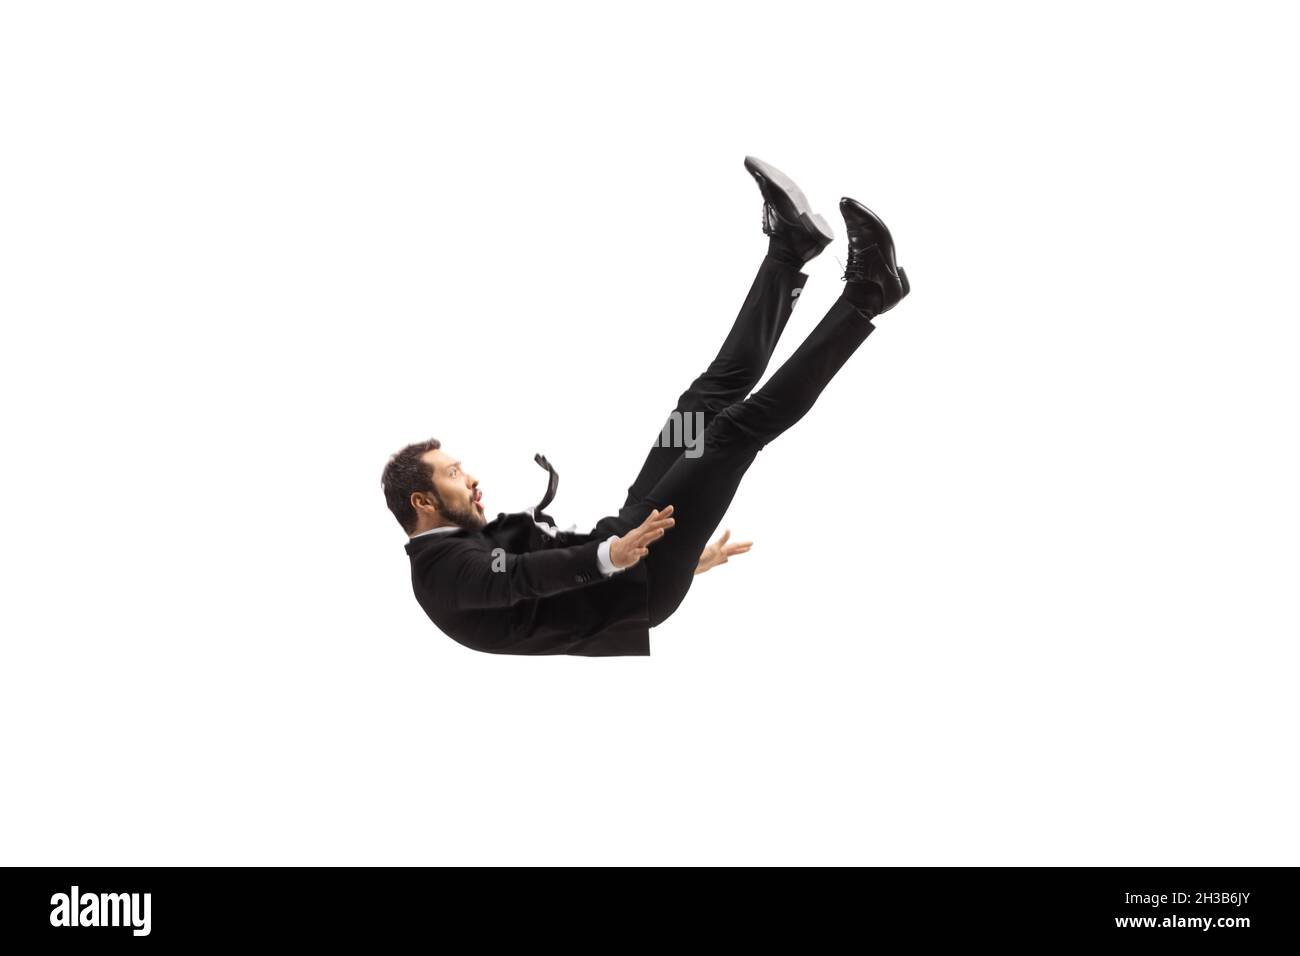 Uomo in abito e cravatta cadendo dall'alto isolato su sfondo bianco Foto Stock